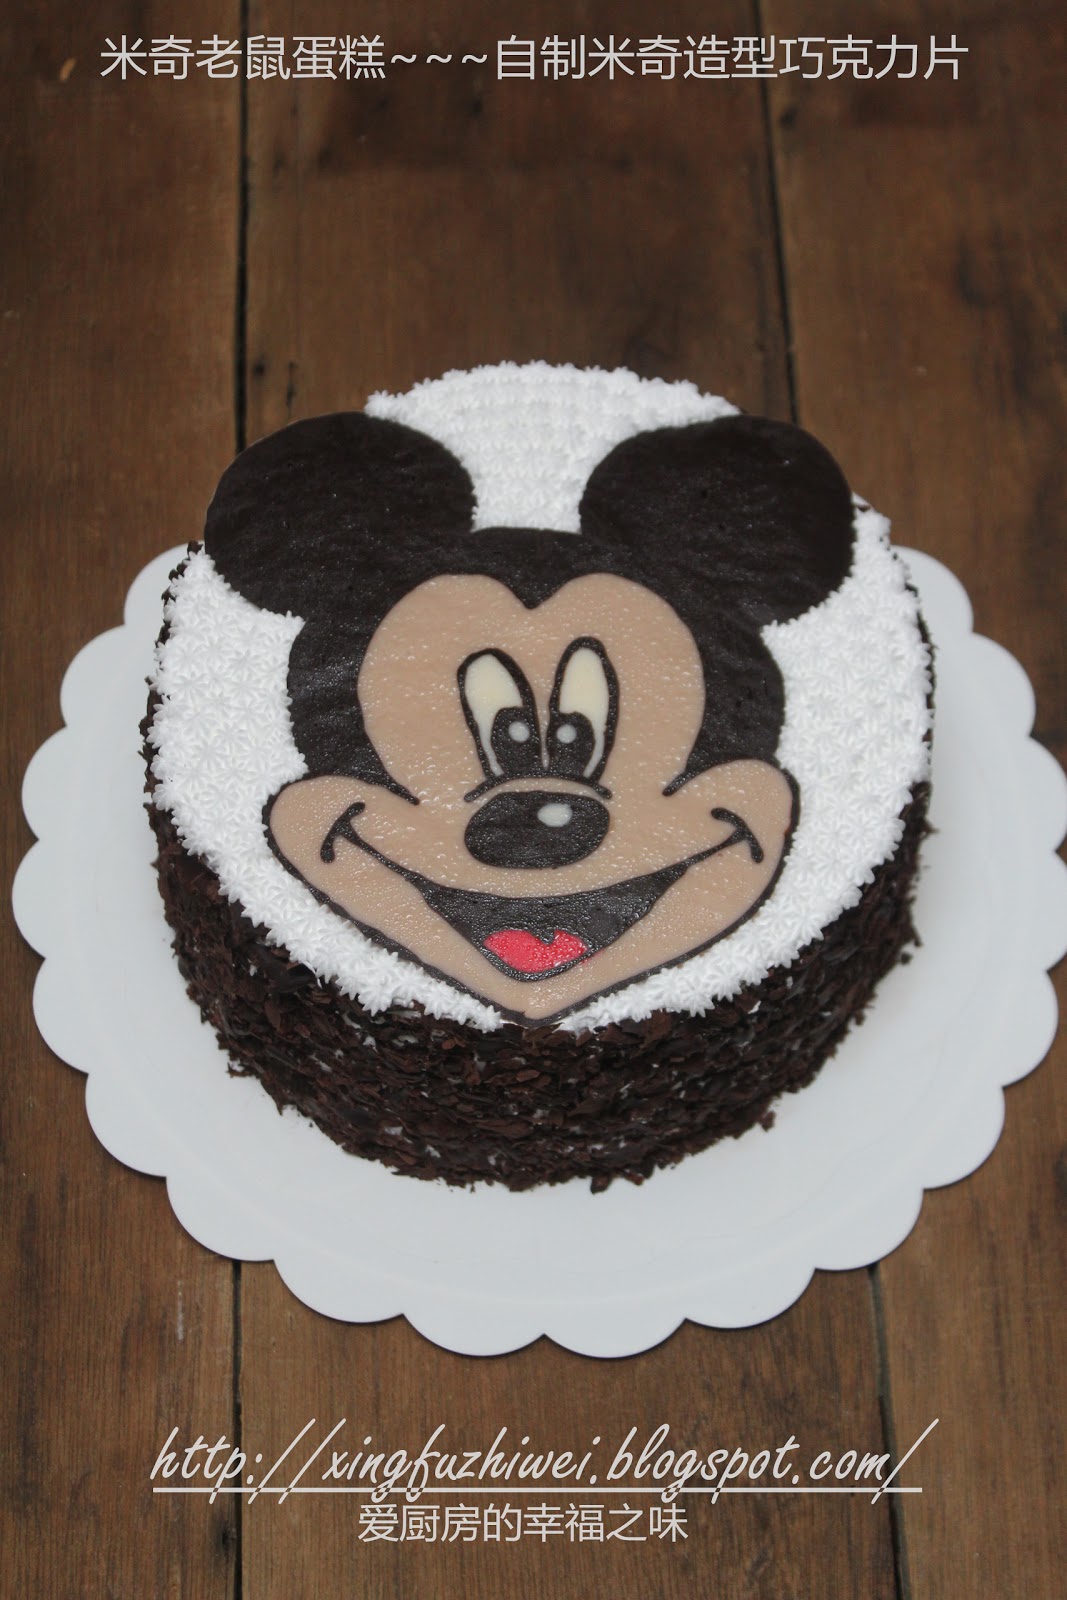 爱厨房的幸福之味: 米奇老鼠蛋糕~~~自制米奇造型巧克力片